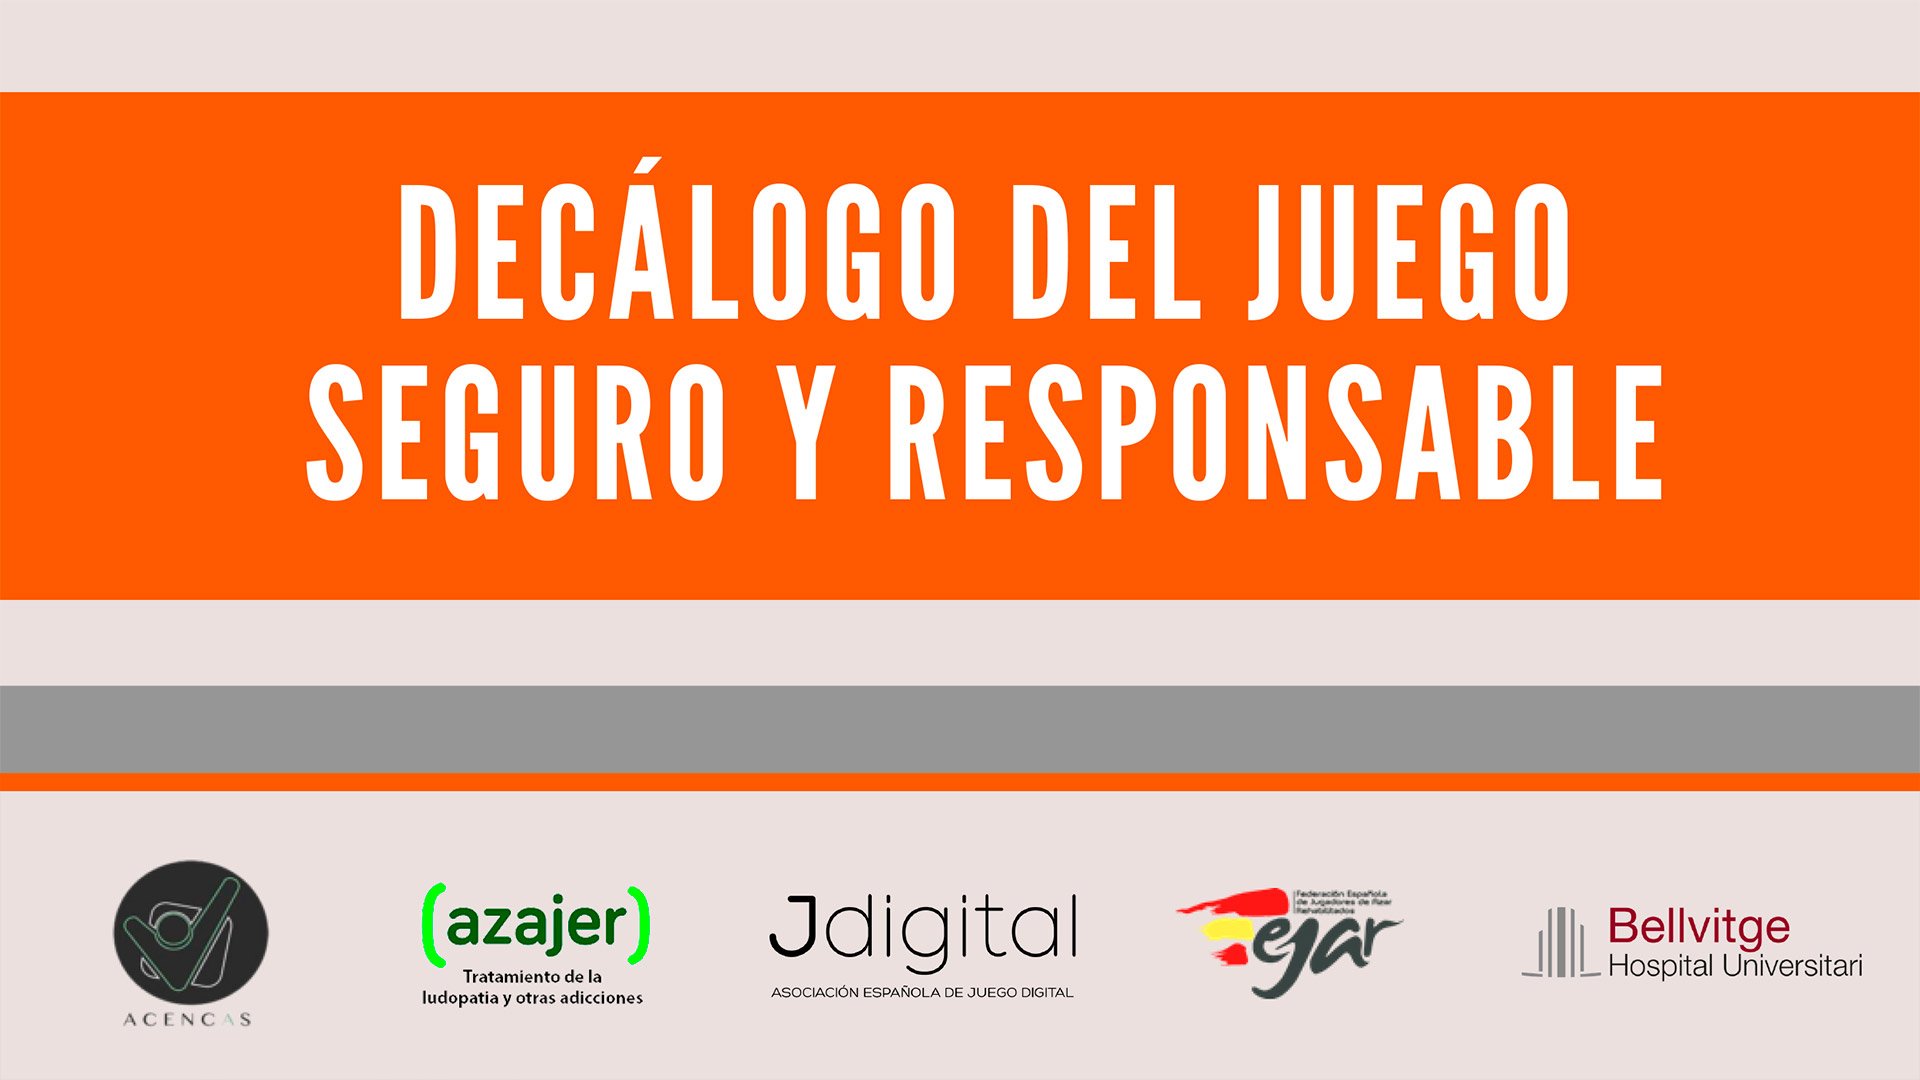 Jdigital y cuatro organizaciones del sector presentaron su Decálogo del Juego Seguro y Responsable